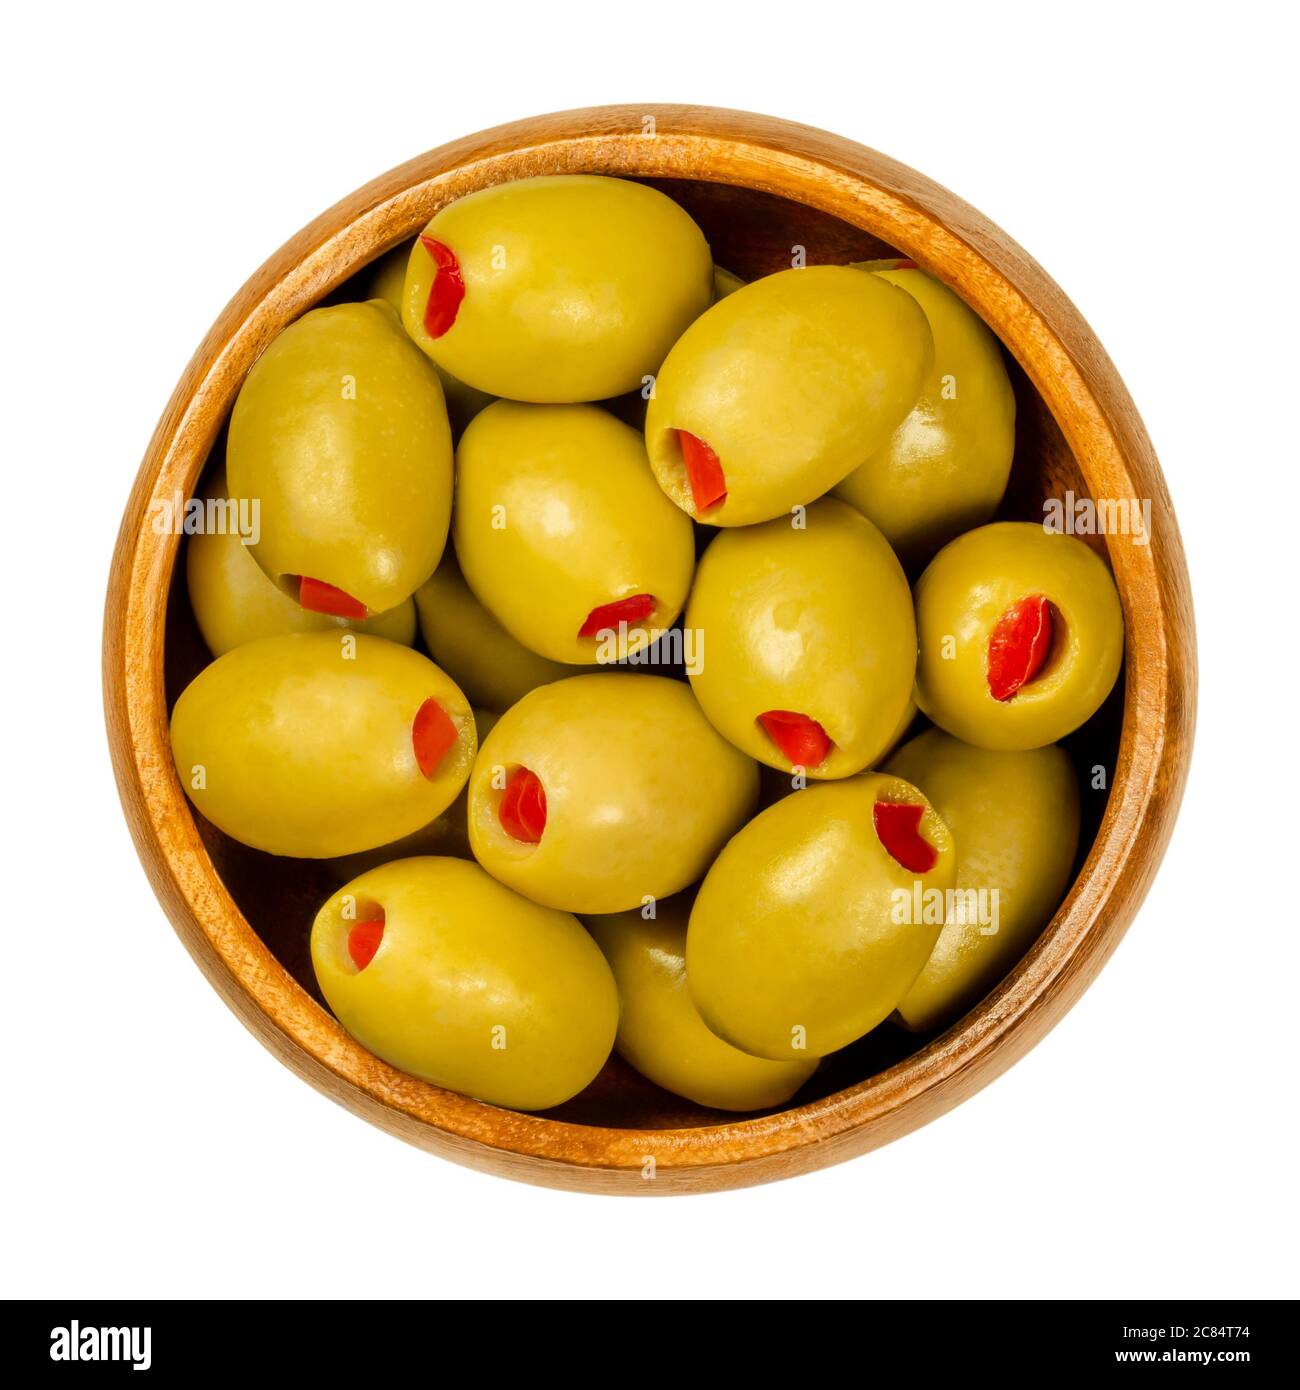 Olives vertes farcies au poivron dans un bol en bois. Grandes olives européennes, fruits d'Olea europaea, fourrées de tranches de poivron rouge marinées. Banque D'Images